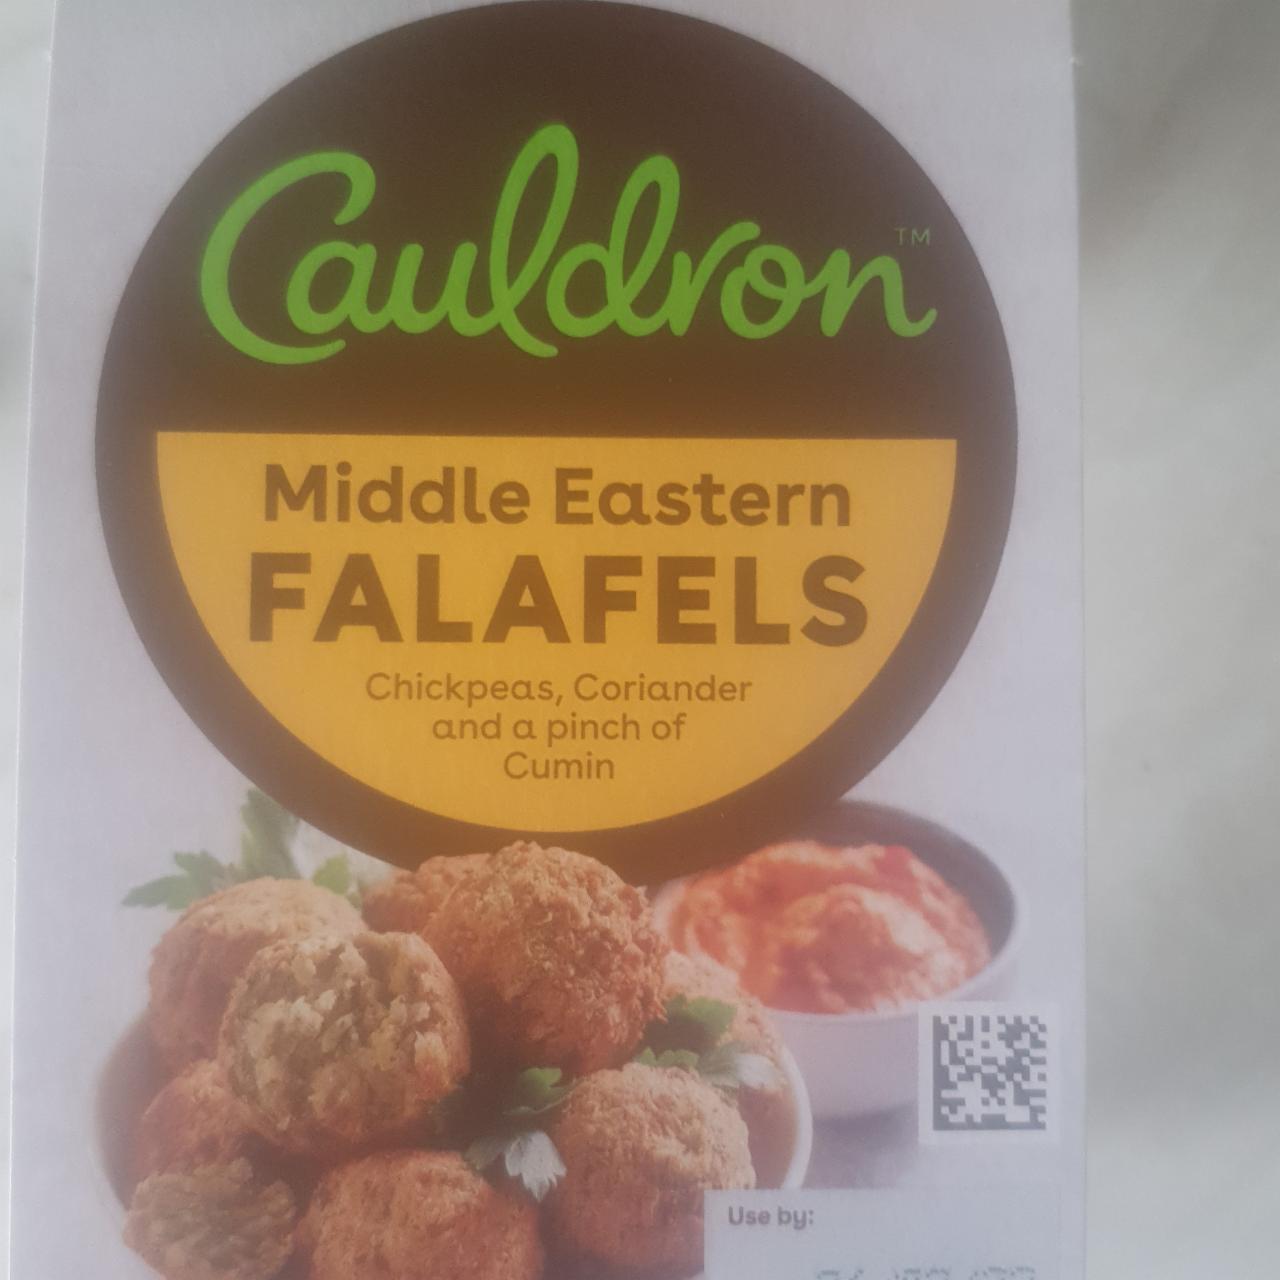 Fotografie - Middle Eastern Falafels Cauldron